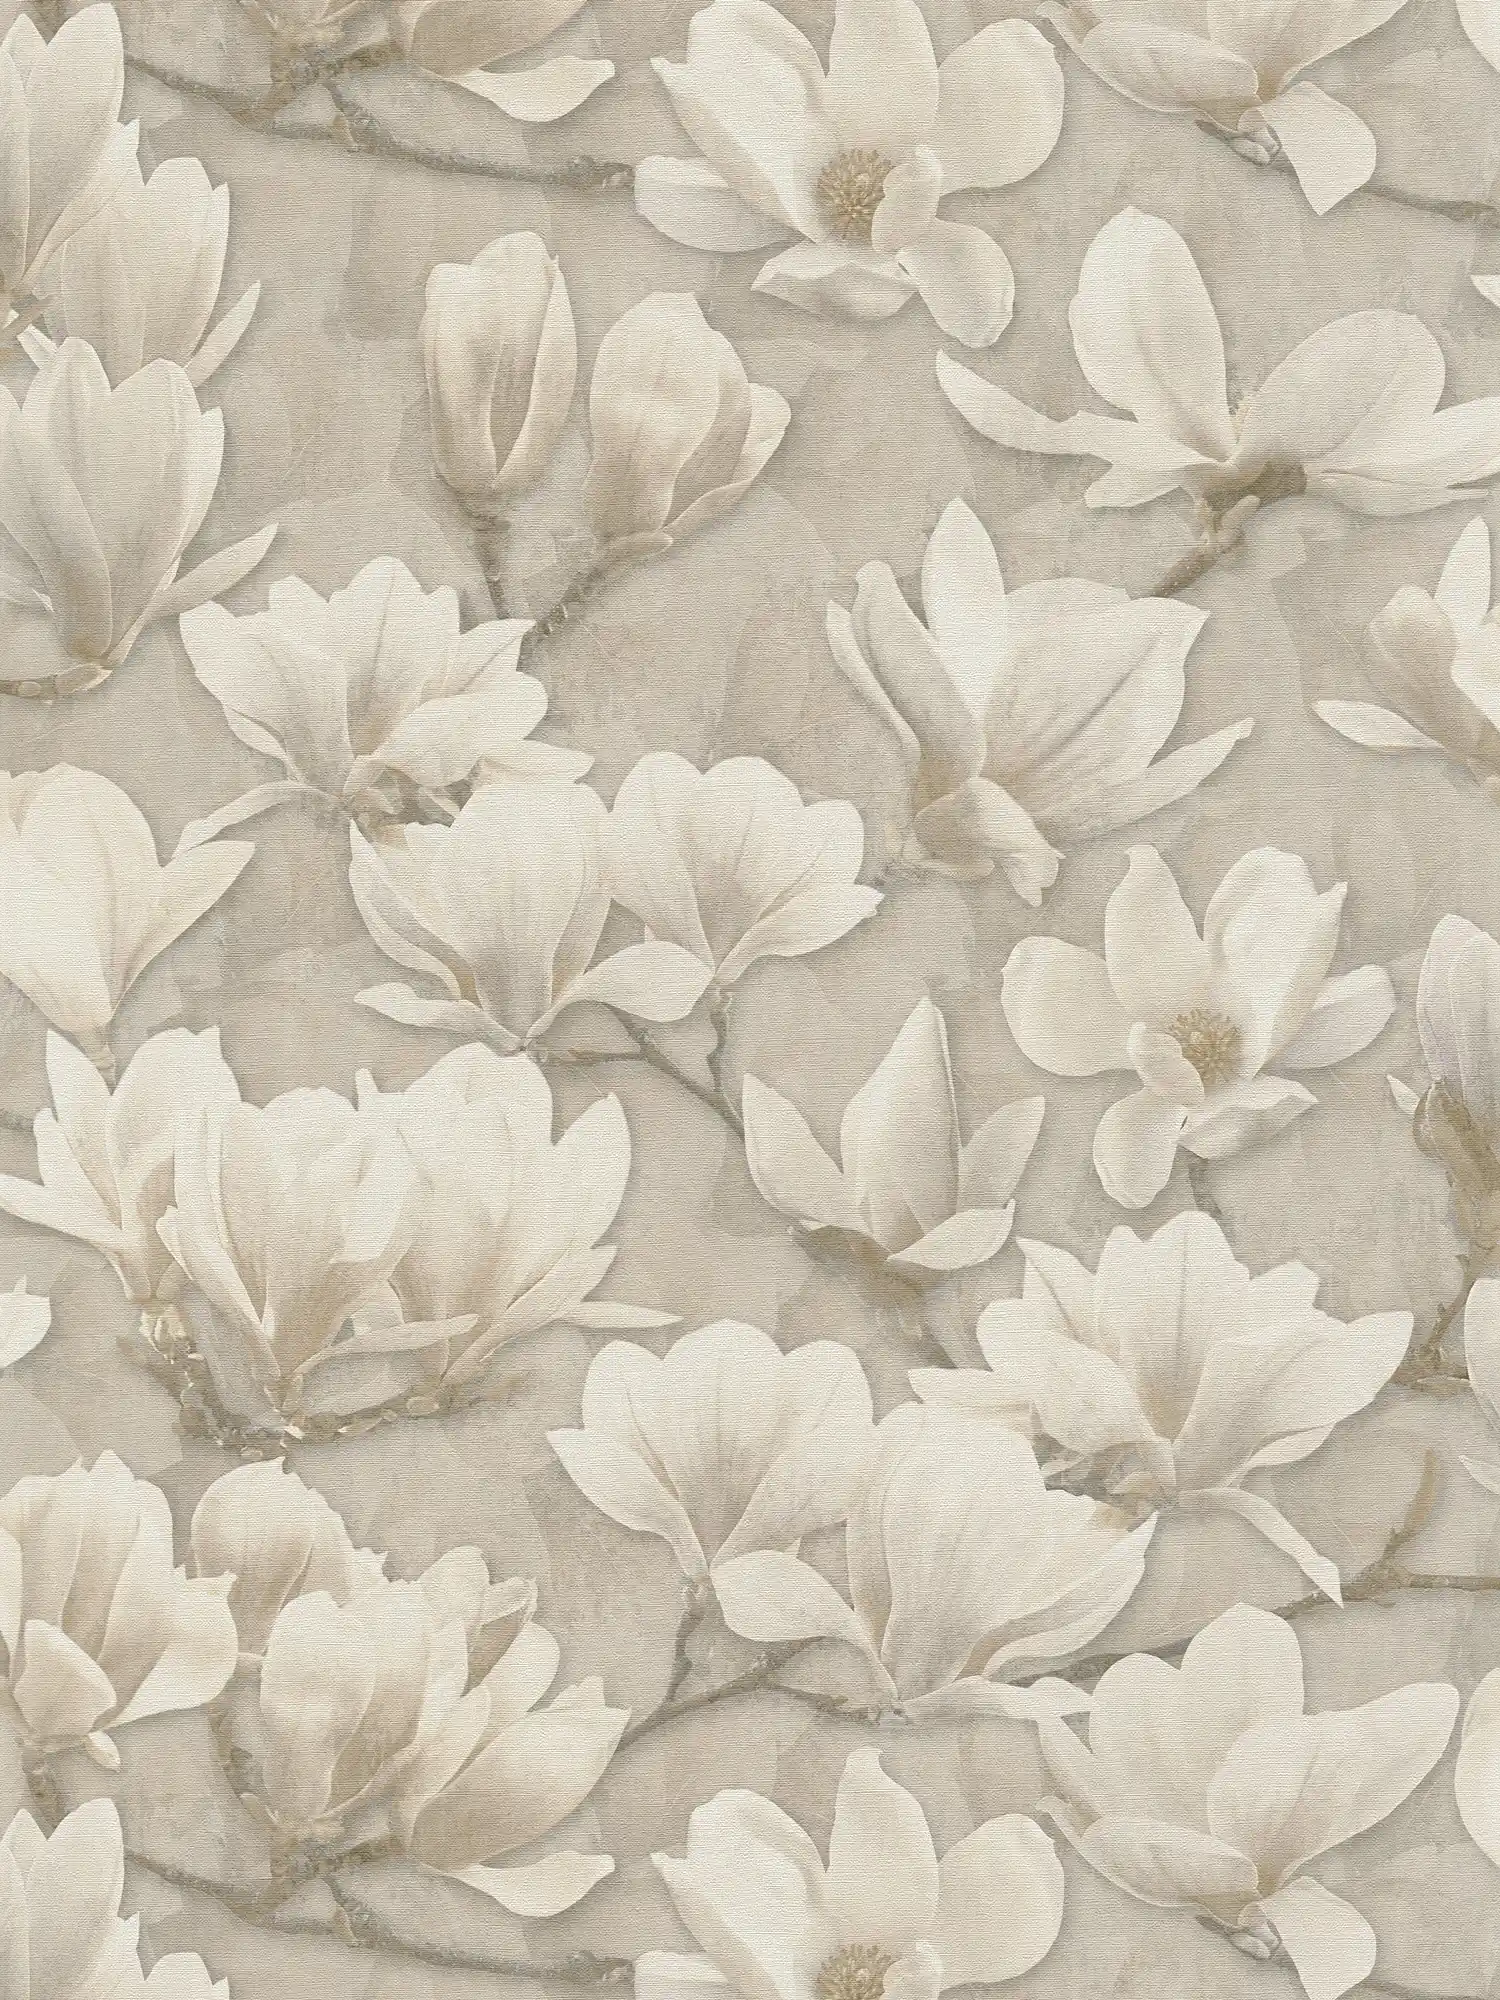 Vliesbehang met bloemenmotiefprint van magnolia - beige, crème, wit
